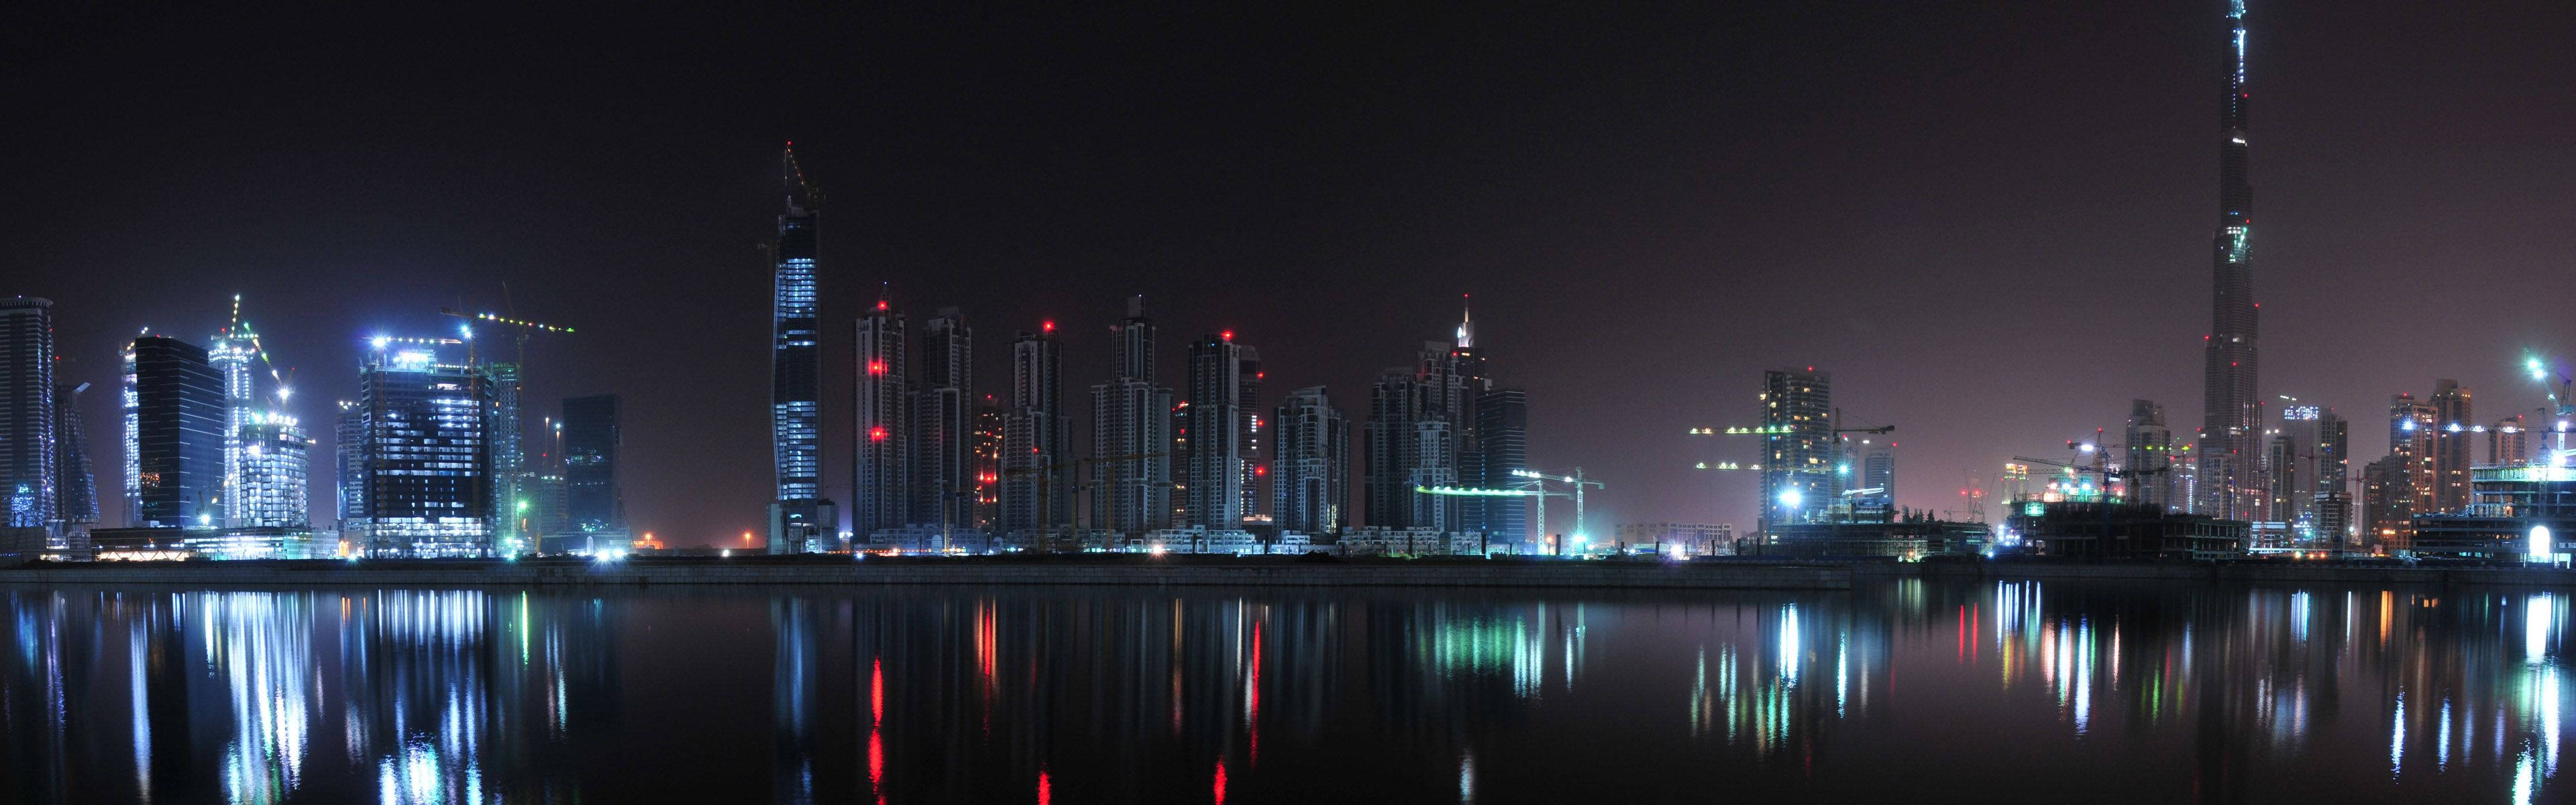 Dubaiskyline Bei Nacht Für Monitor Wallpaper